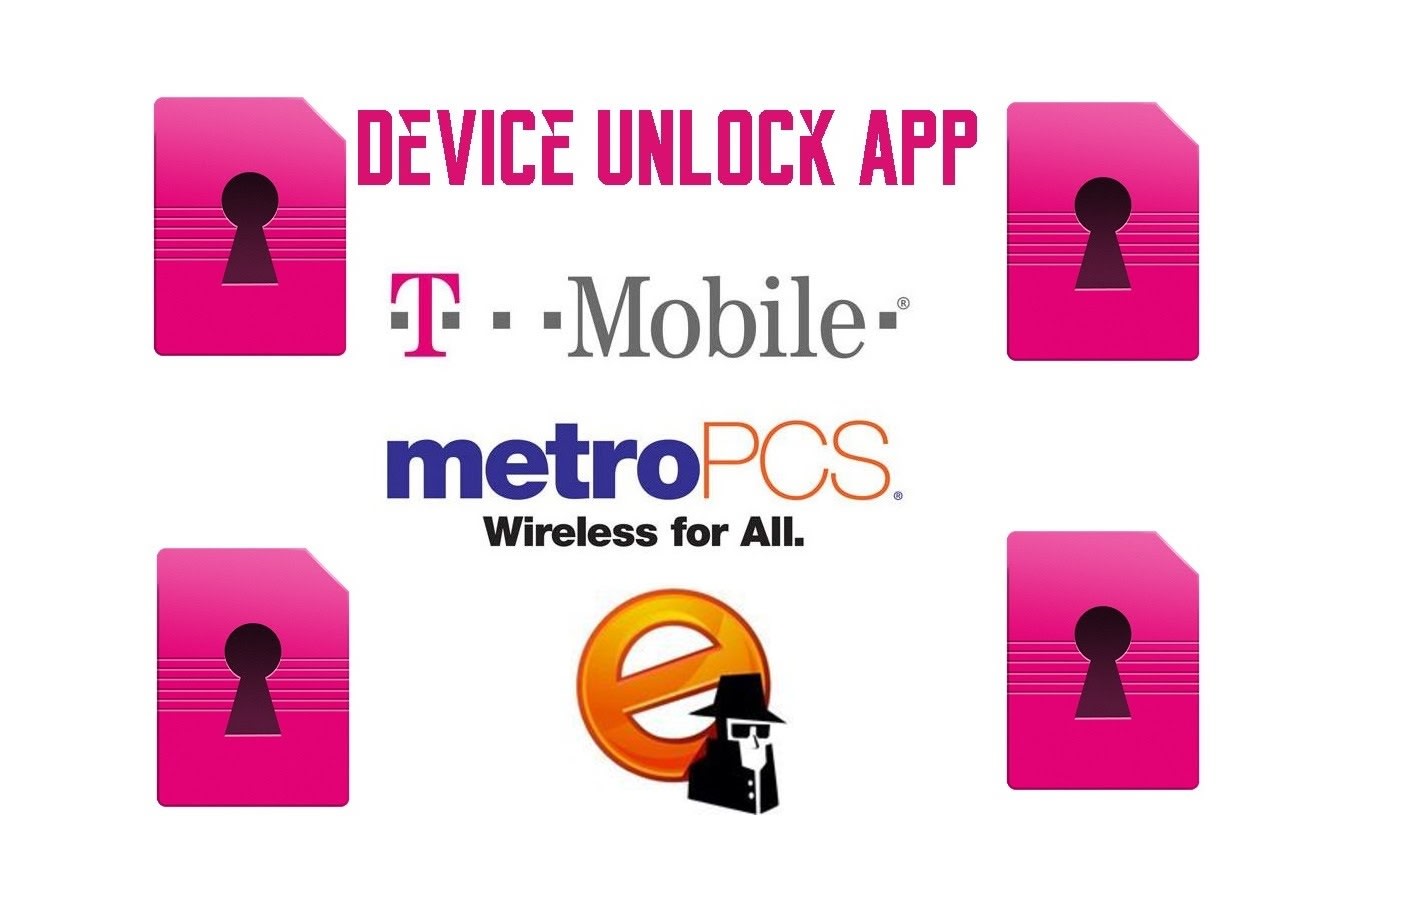 Unlock lg phone metropcs or tmobile device unlock app ok by Codeunlock |  Fiverr